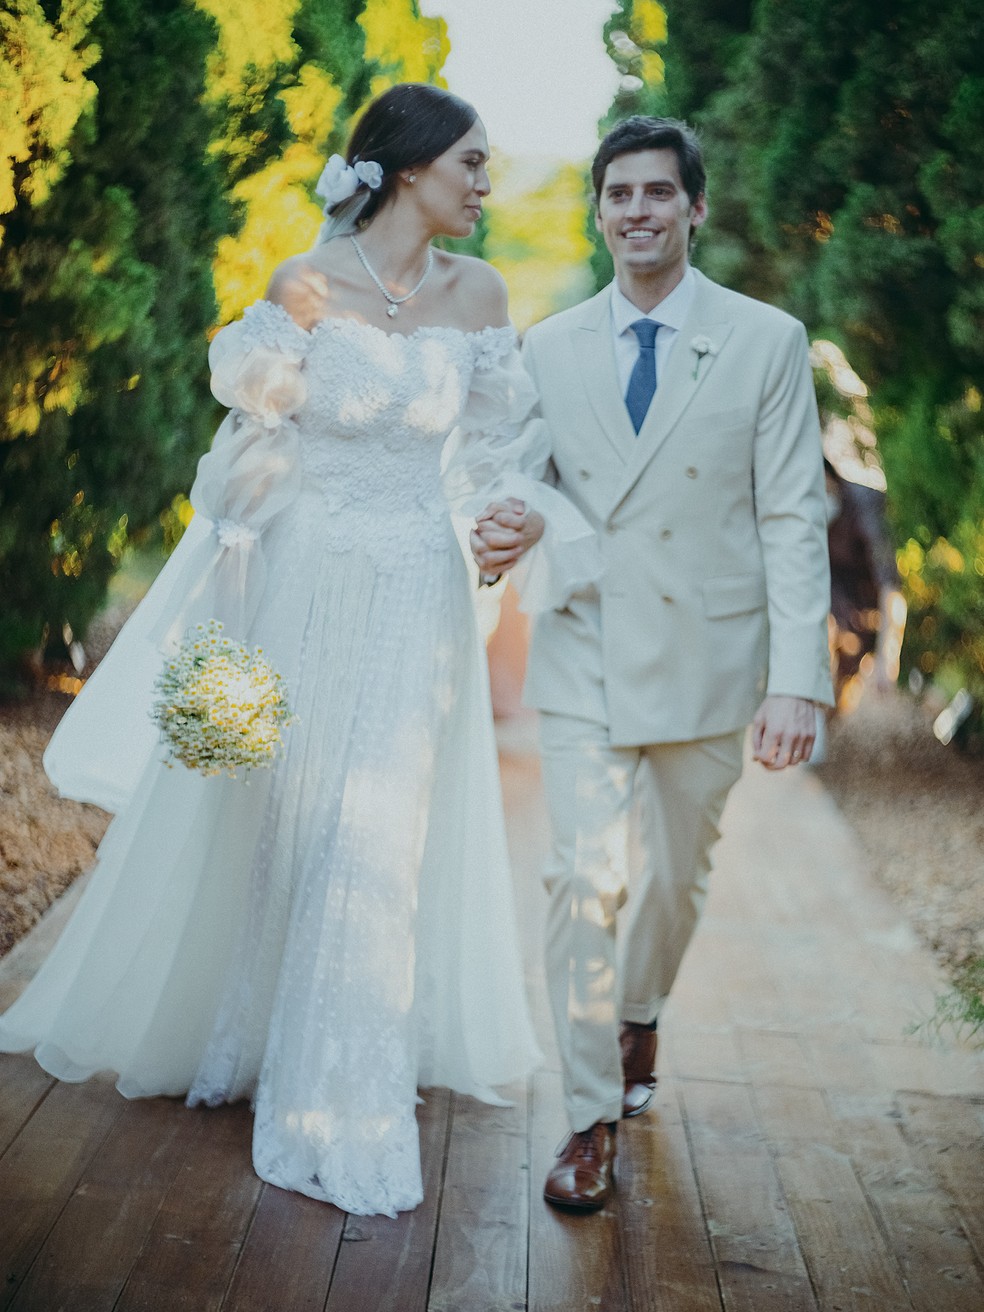 Francesca Brown Alterio casou-se com Raphael Villela em um festão para 750 pessoas na fazenda de sua família, no interior paulista — Foto: Divulgação